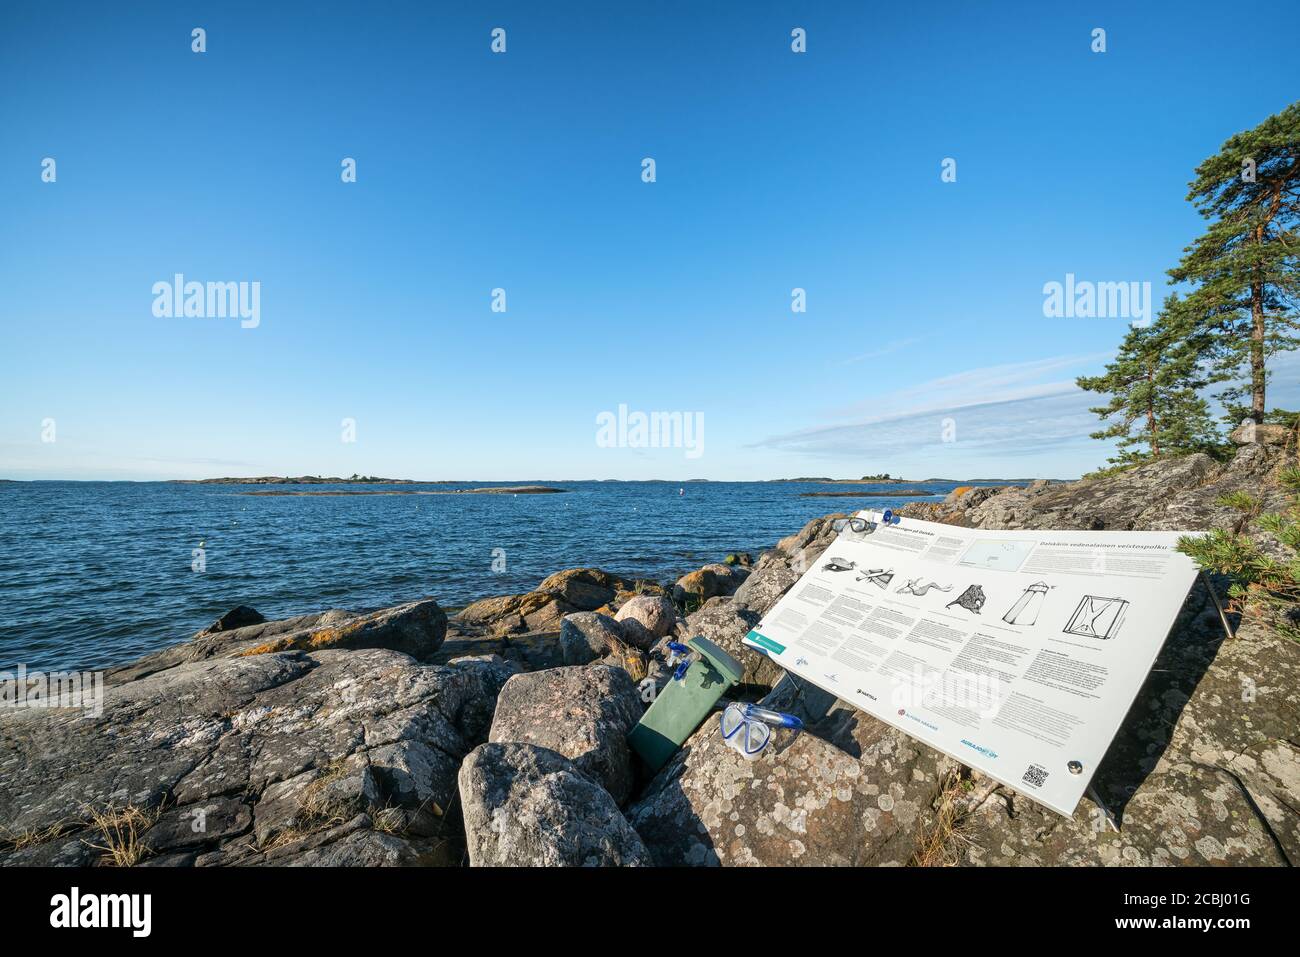 Un sentier de sculpture sous-marine à l'île de Dalskär, Parainen, Finlande Banque D'Images